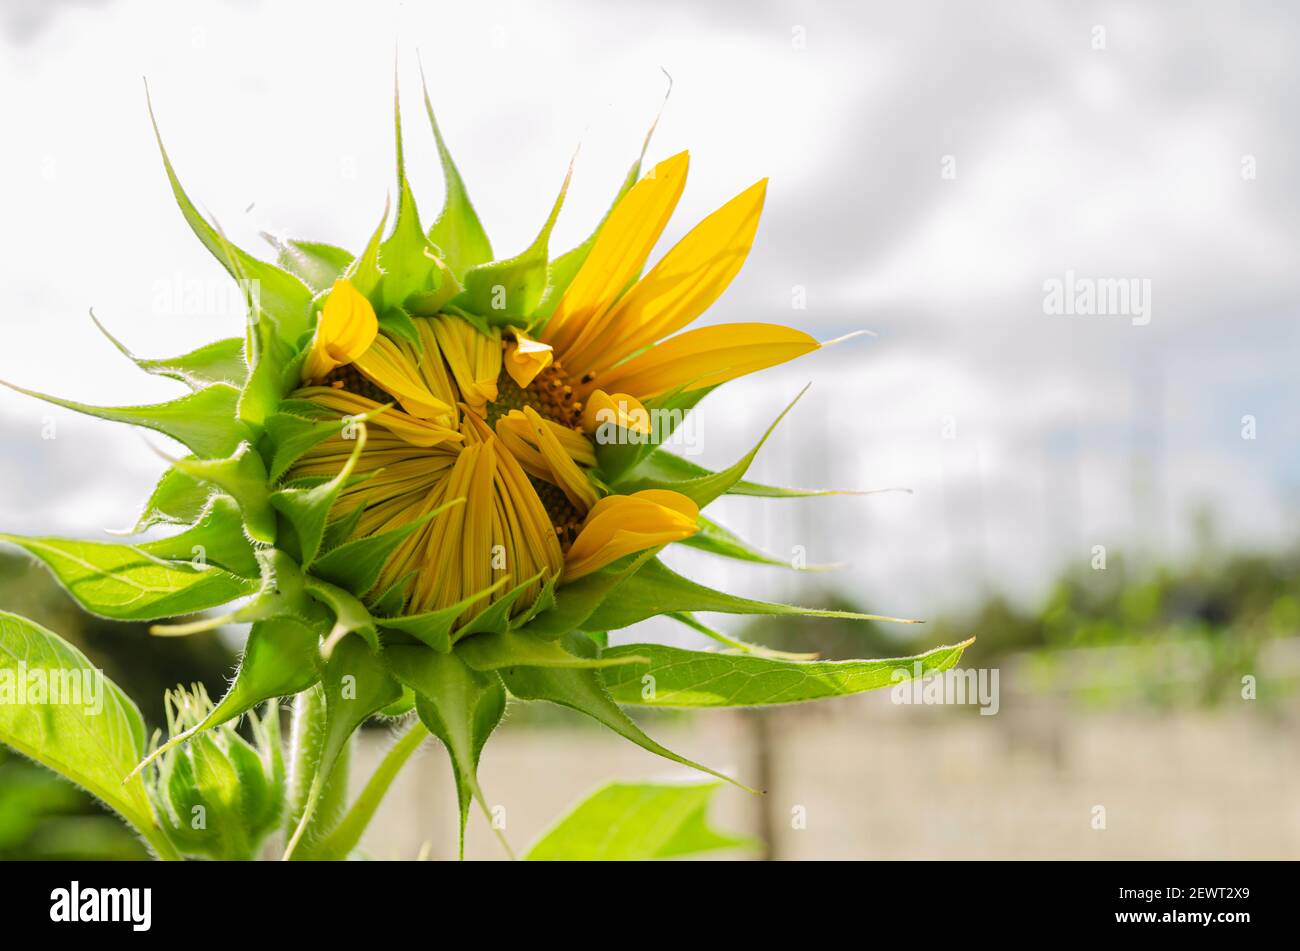 Yellow Sunflower Opening Stock Photo